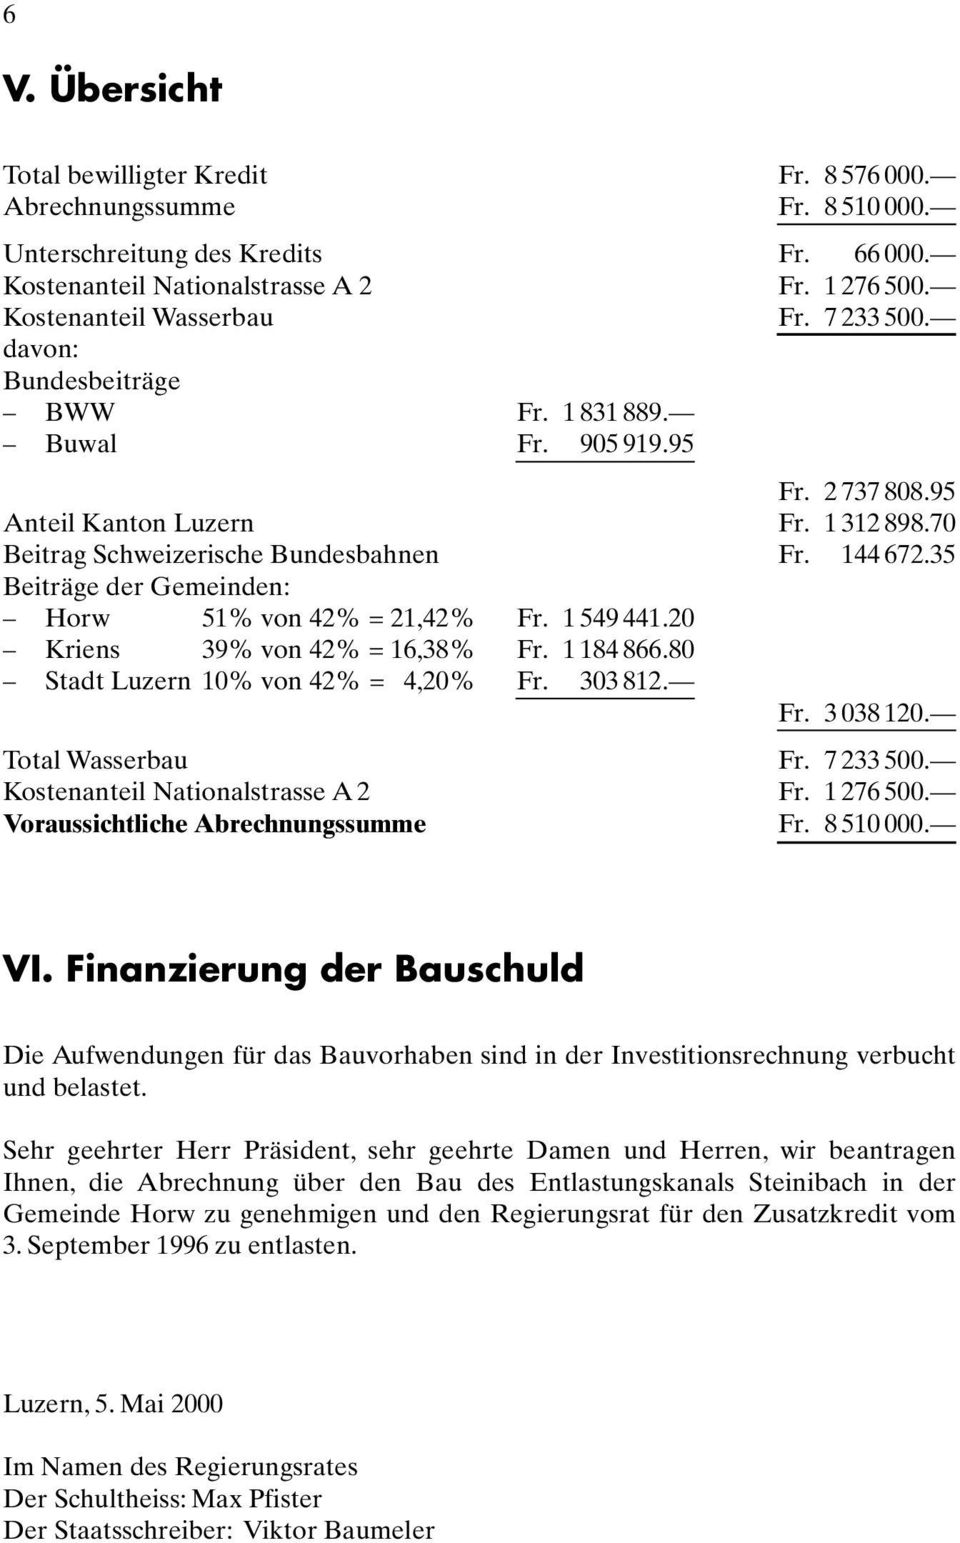 144 672.35 Beiträge der Gemeinden: Horw 51% von 42% = 21,42% Fr. 1 549 441.20 Kriens 39% von 42% = 16,38% Fr. 1 184 866.80 Stadt Luzern 10% von 42% = 4,20% Fr. 303 812. Fr. 3 038 120.